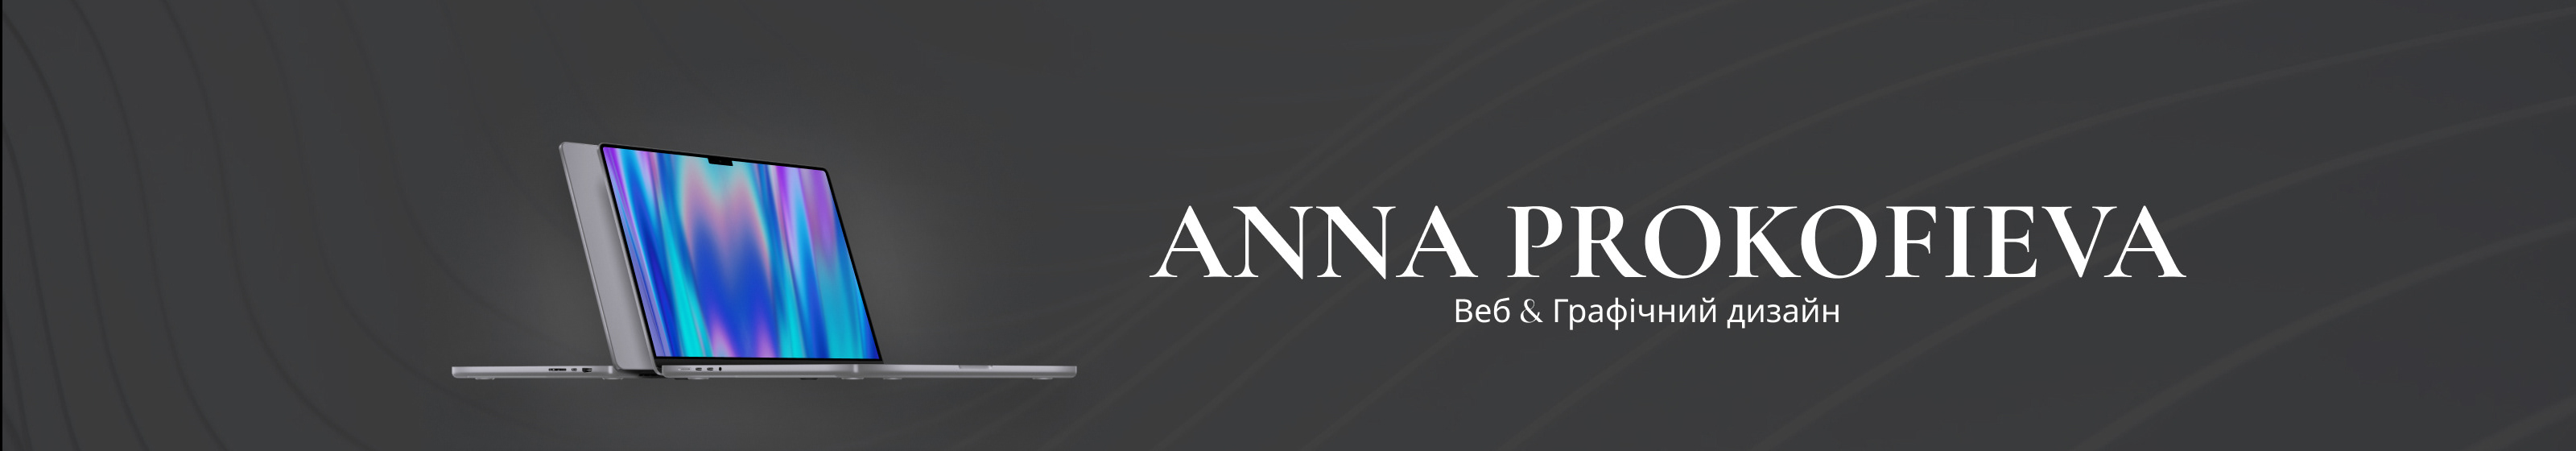 Anna Prokofievas profilbanner